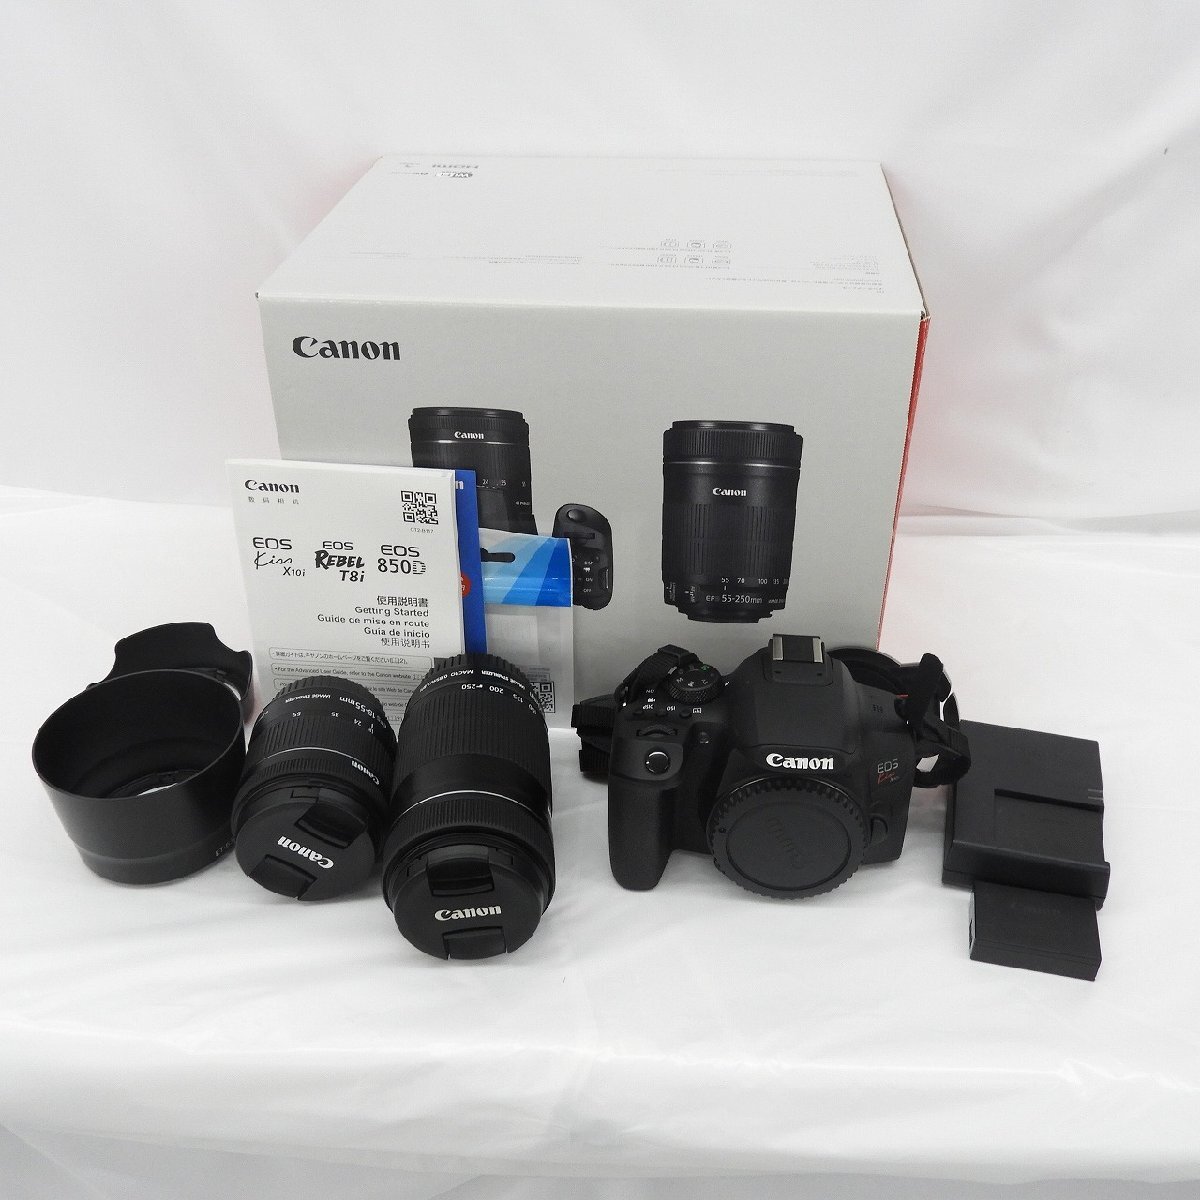 【中古品】Canon キャノン デジタル一眼レフカメラ EOS Kiss X10i ダブルズームキット(18-55/55-250) ブラック 913156855 0505の画像1